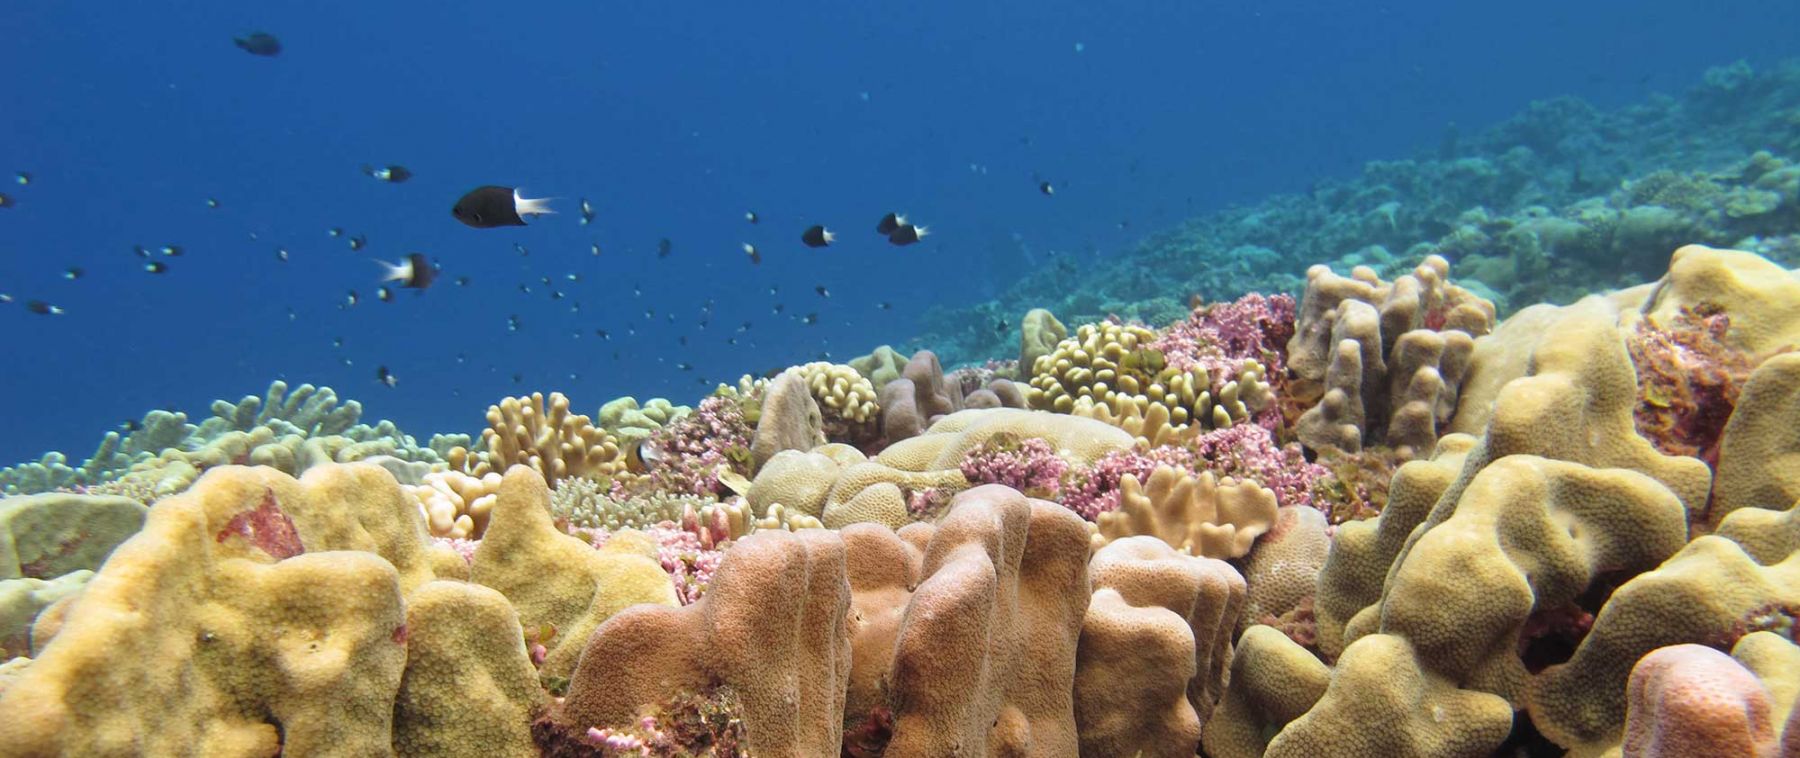 Coral Reef in Nukuoro, Micronesia. Credit: Alyson Santoro